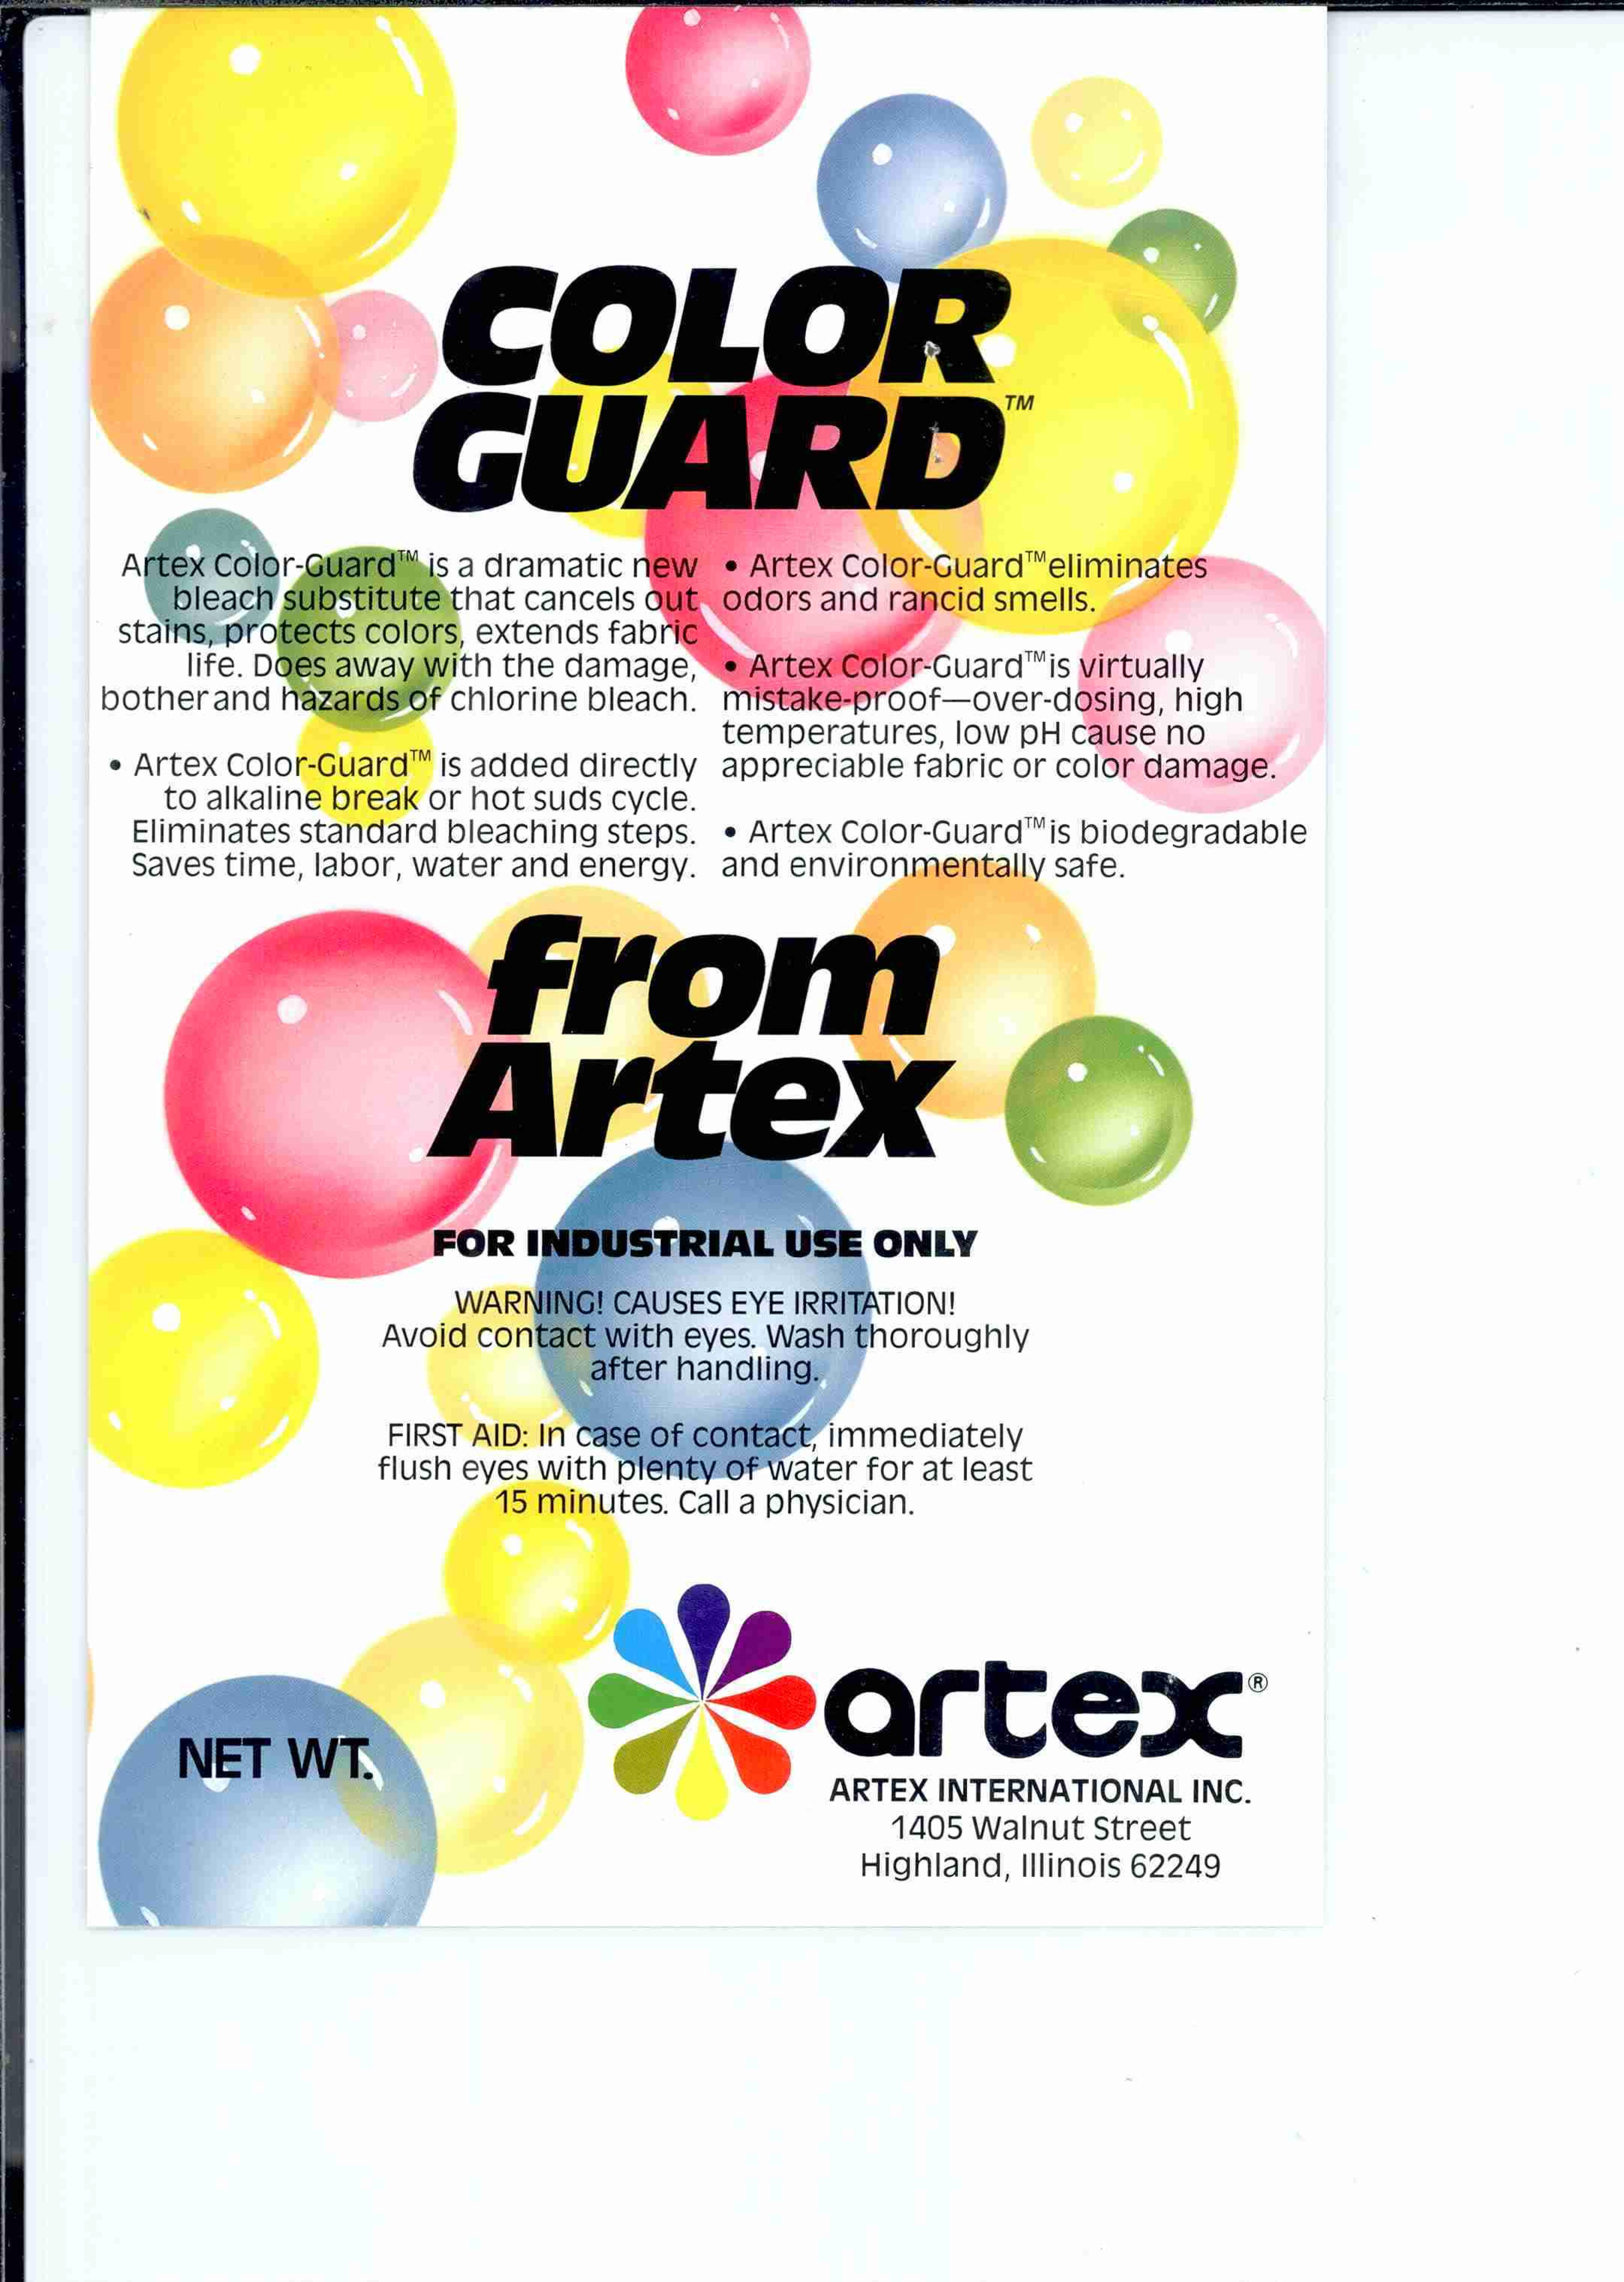  ARTEX COLOR-GUARD